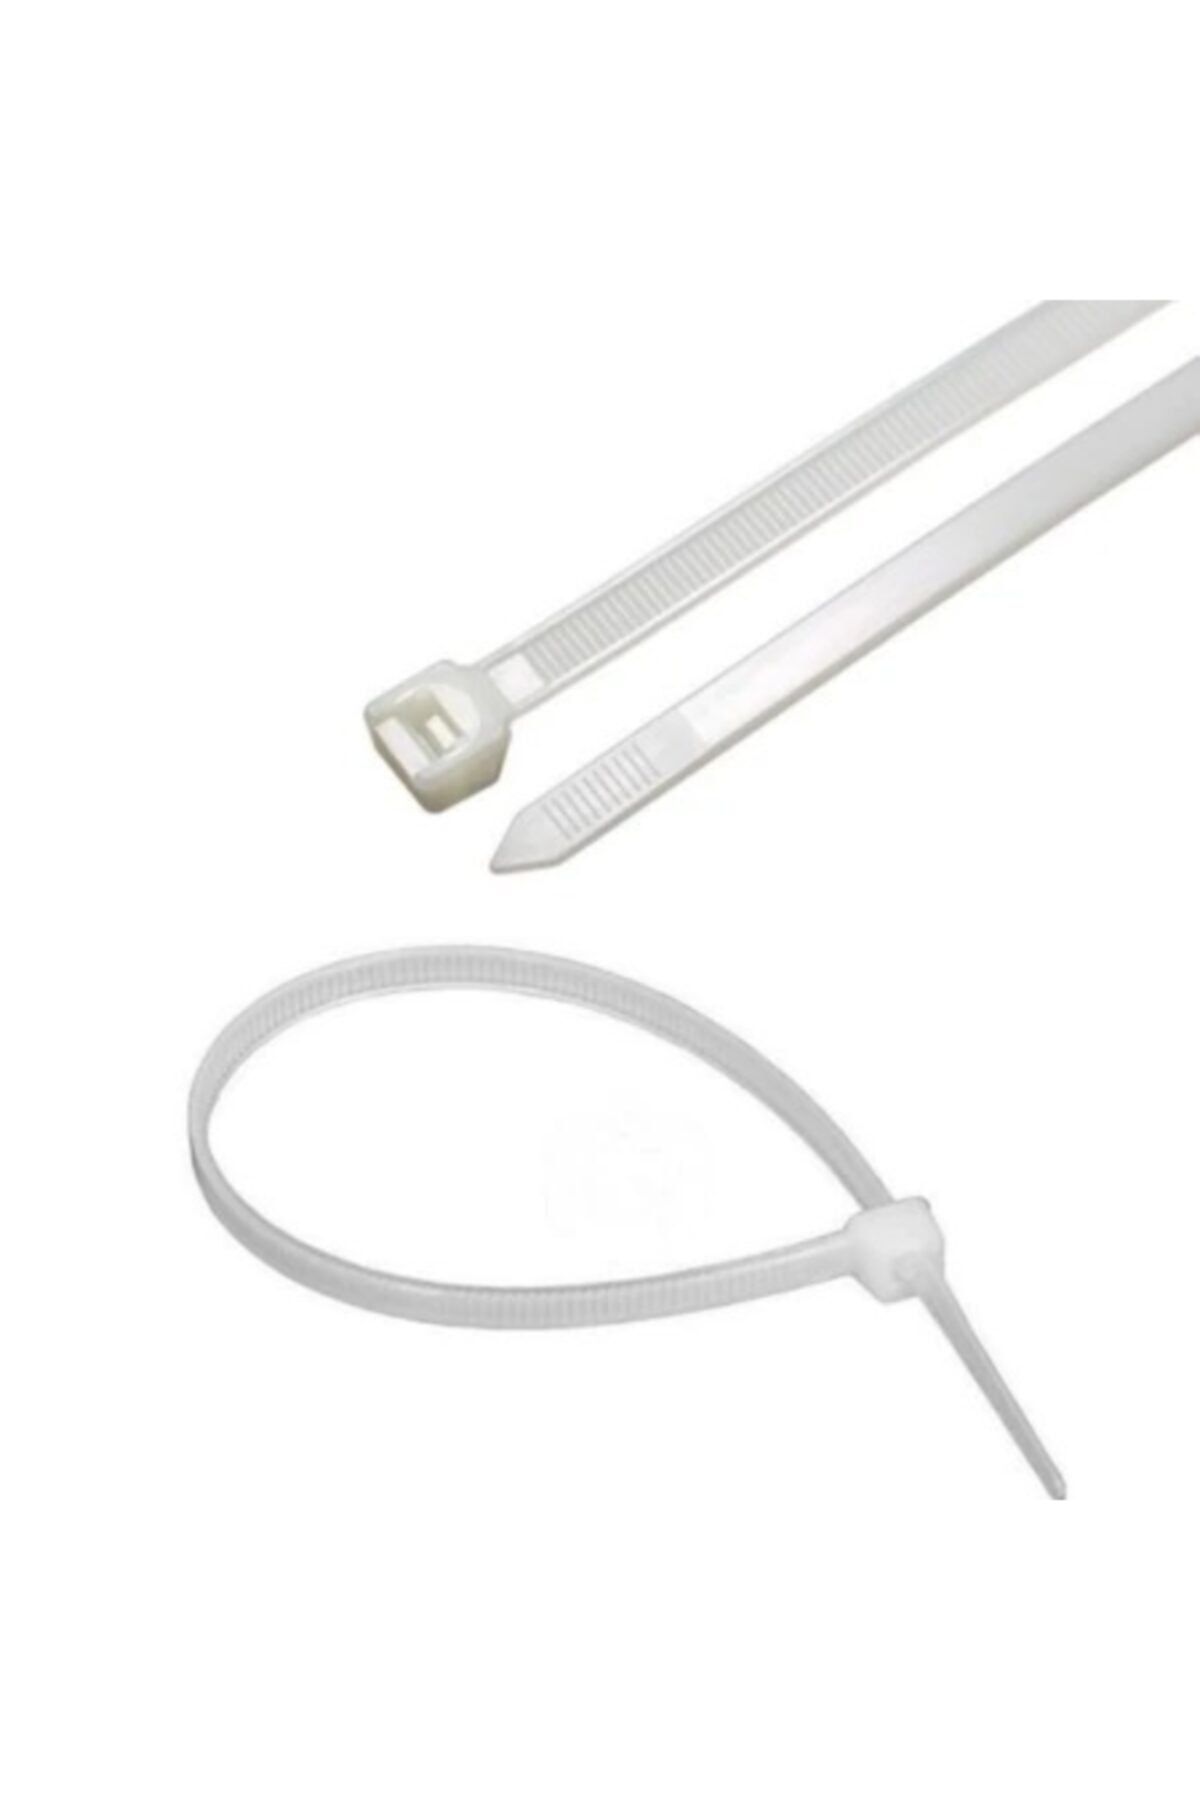 Zenith 2,5 X 100mm Beyaz Kablo Bağı & Plastik Cırt Kelepçe Paket (100adet)